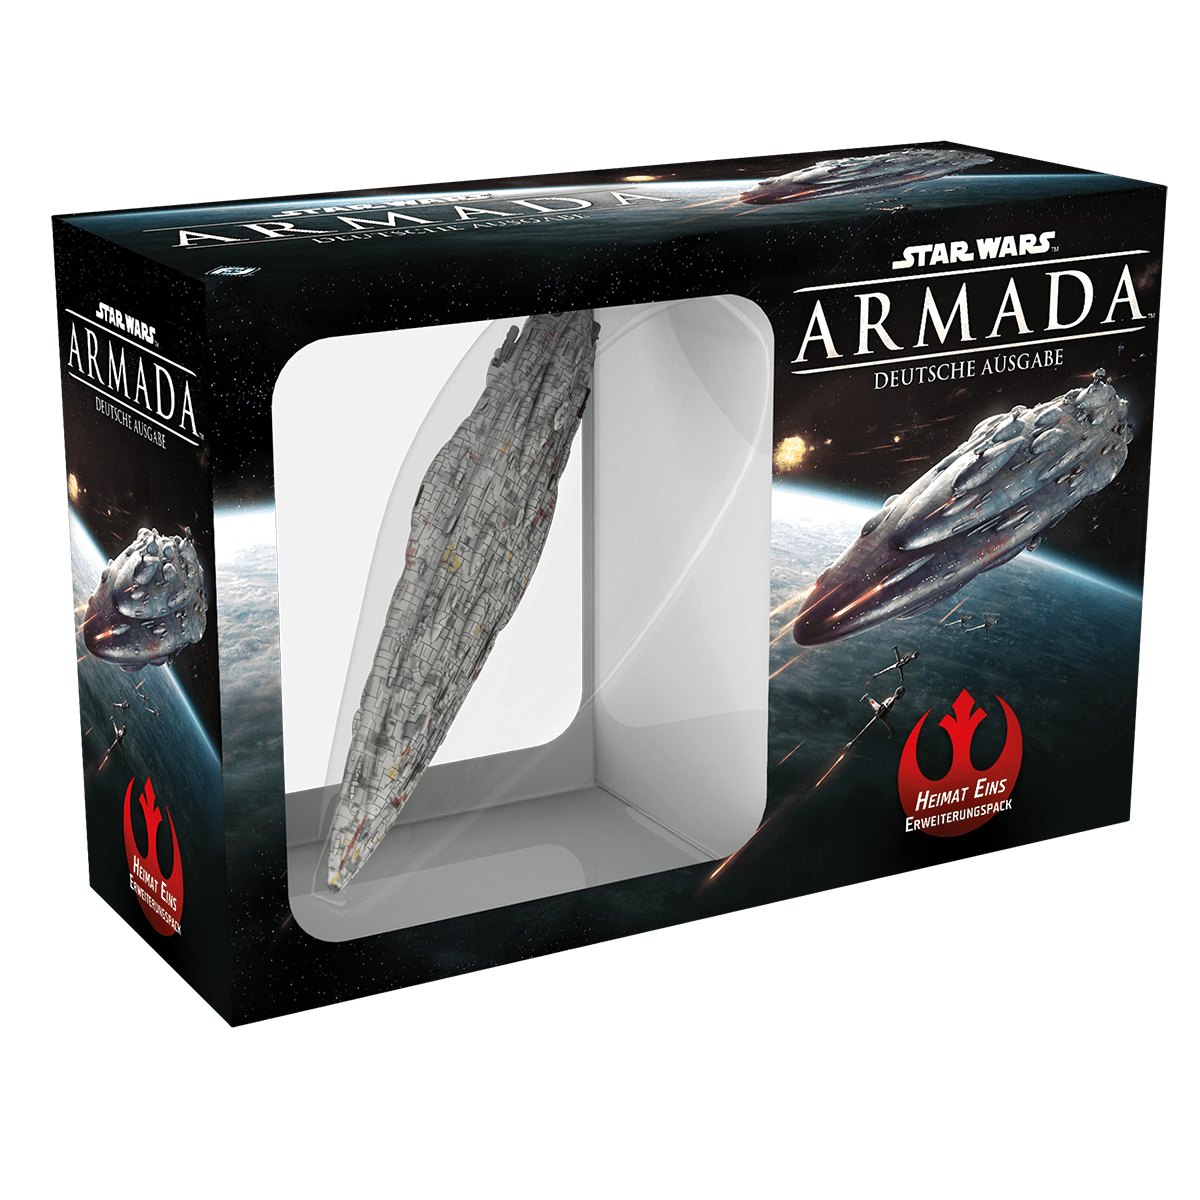 Star Wars: Armada - Heimat Eins Erweiterungspack